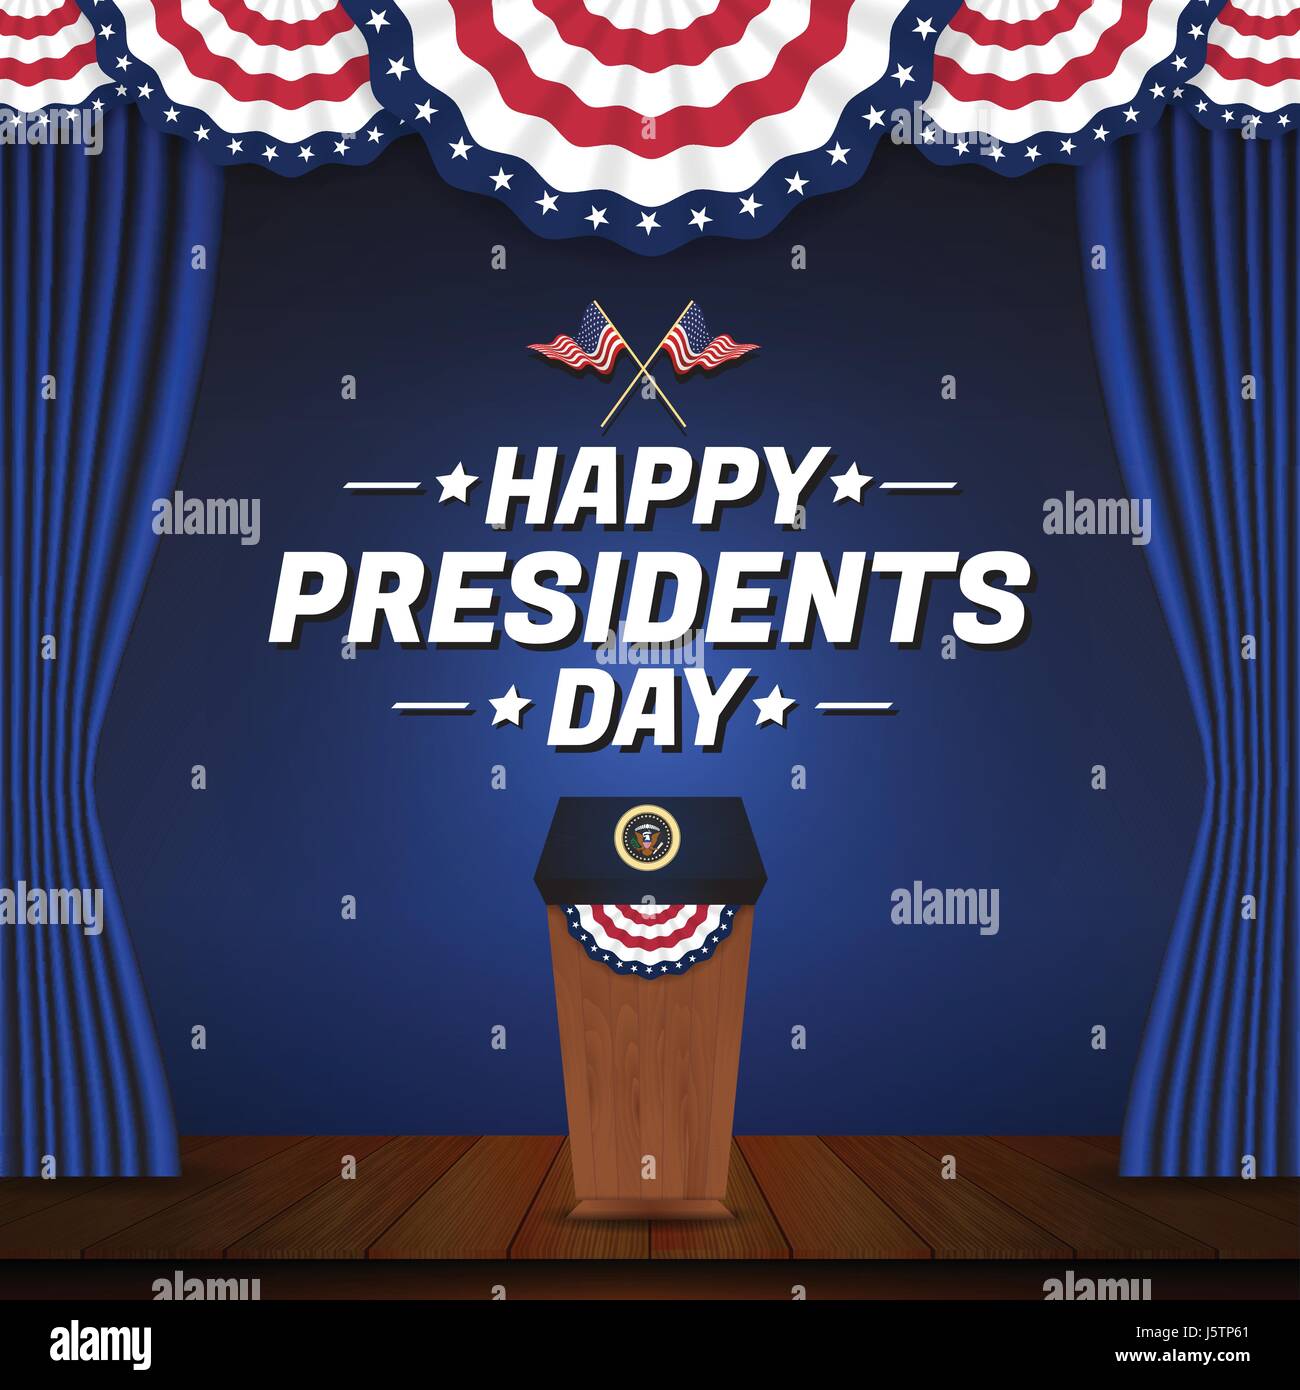 Présidents heureux jour arrière-plan. Podium présidentiel aux Etats-Unis et de l'étape Illustration de Vecteur